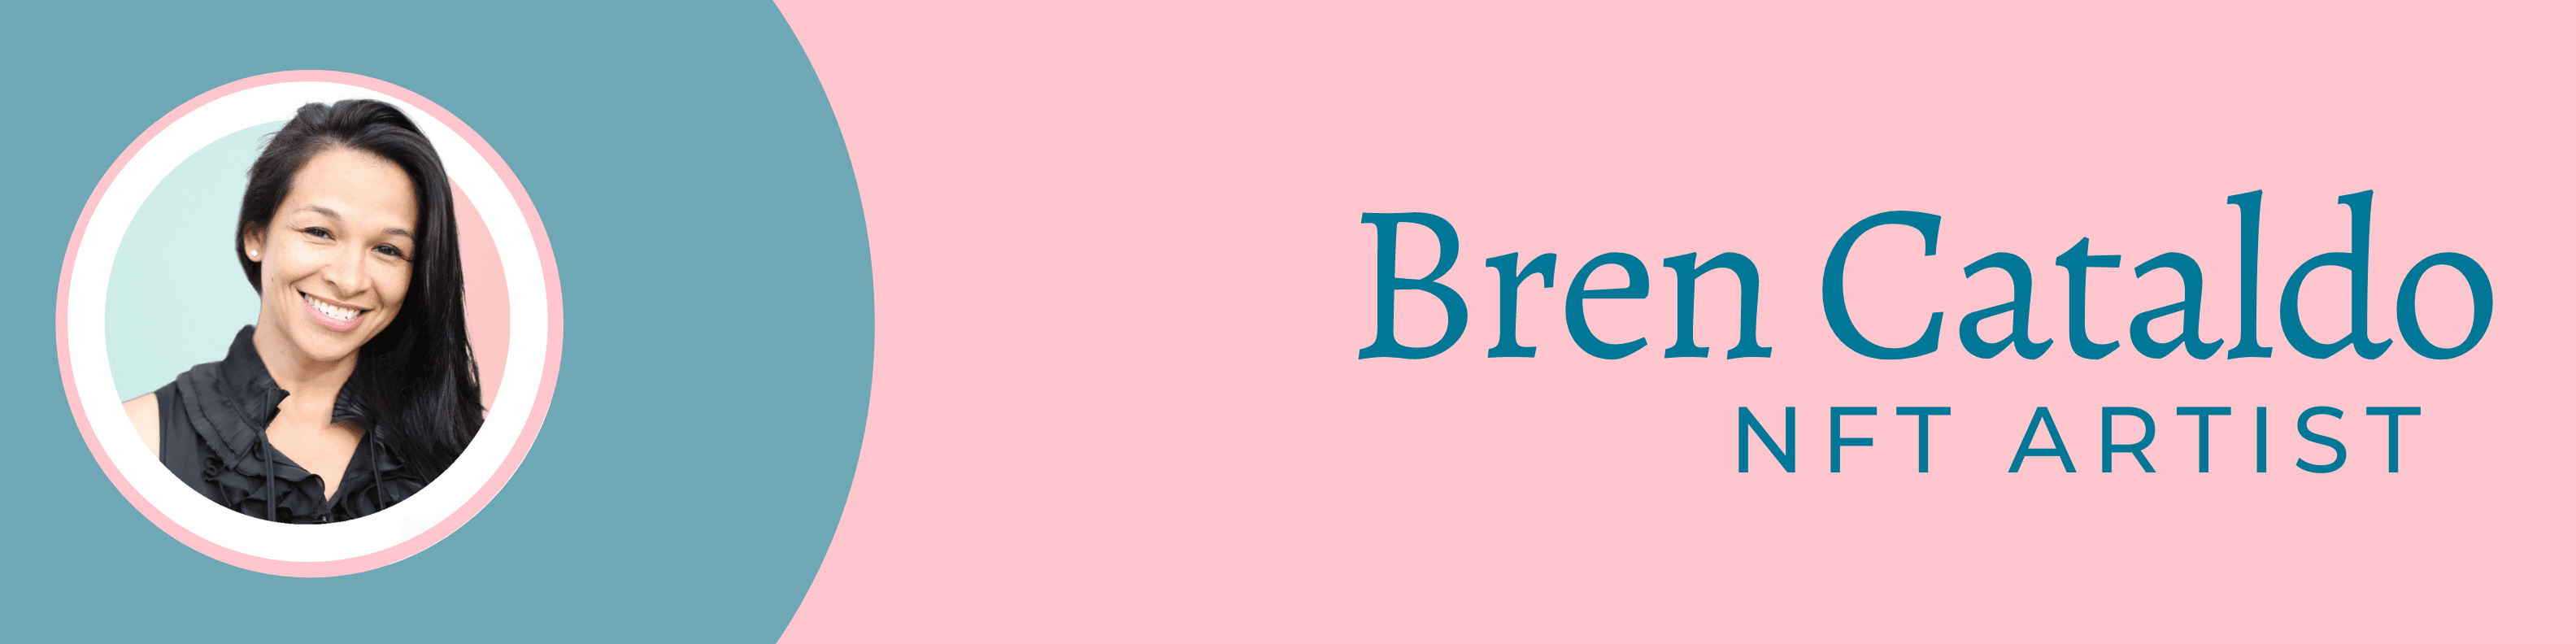 BrenCataldo banner